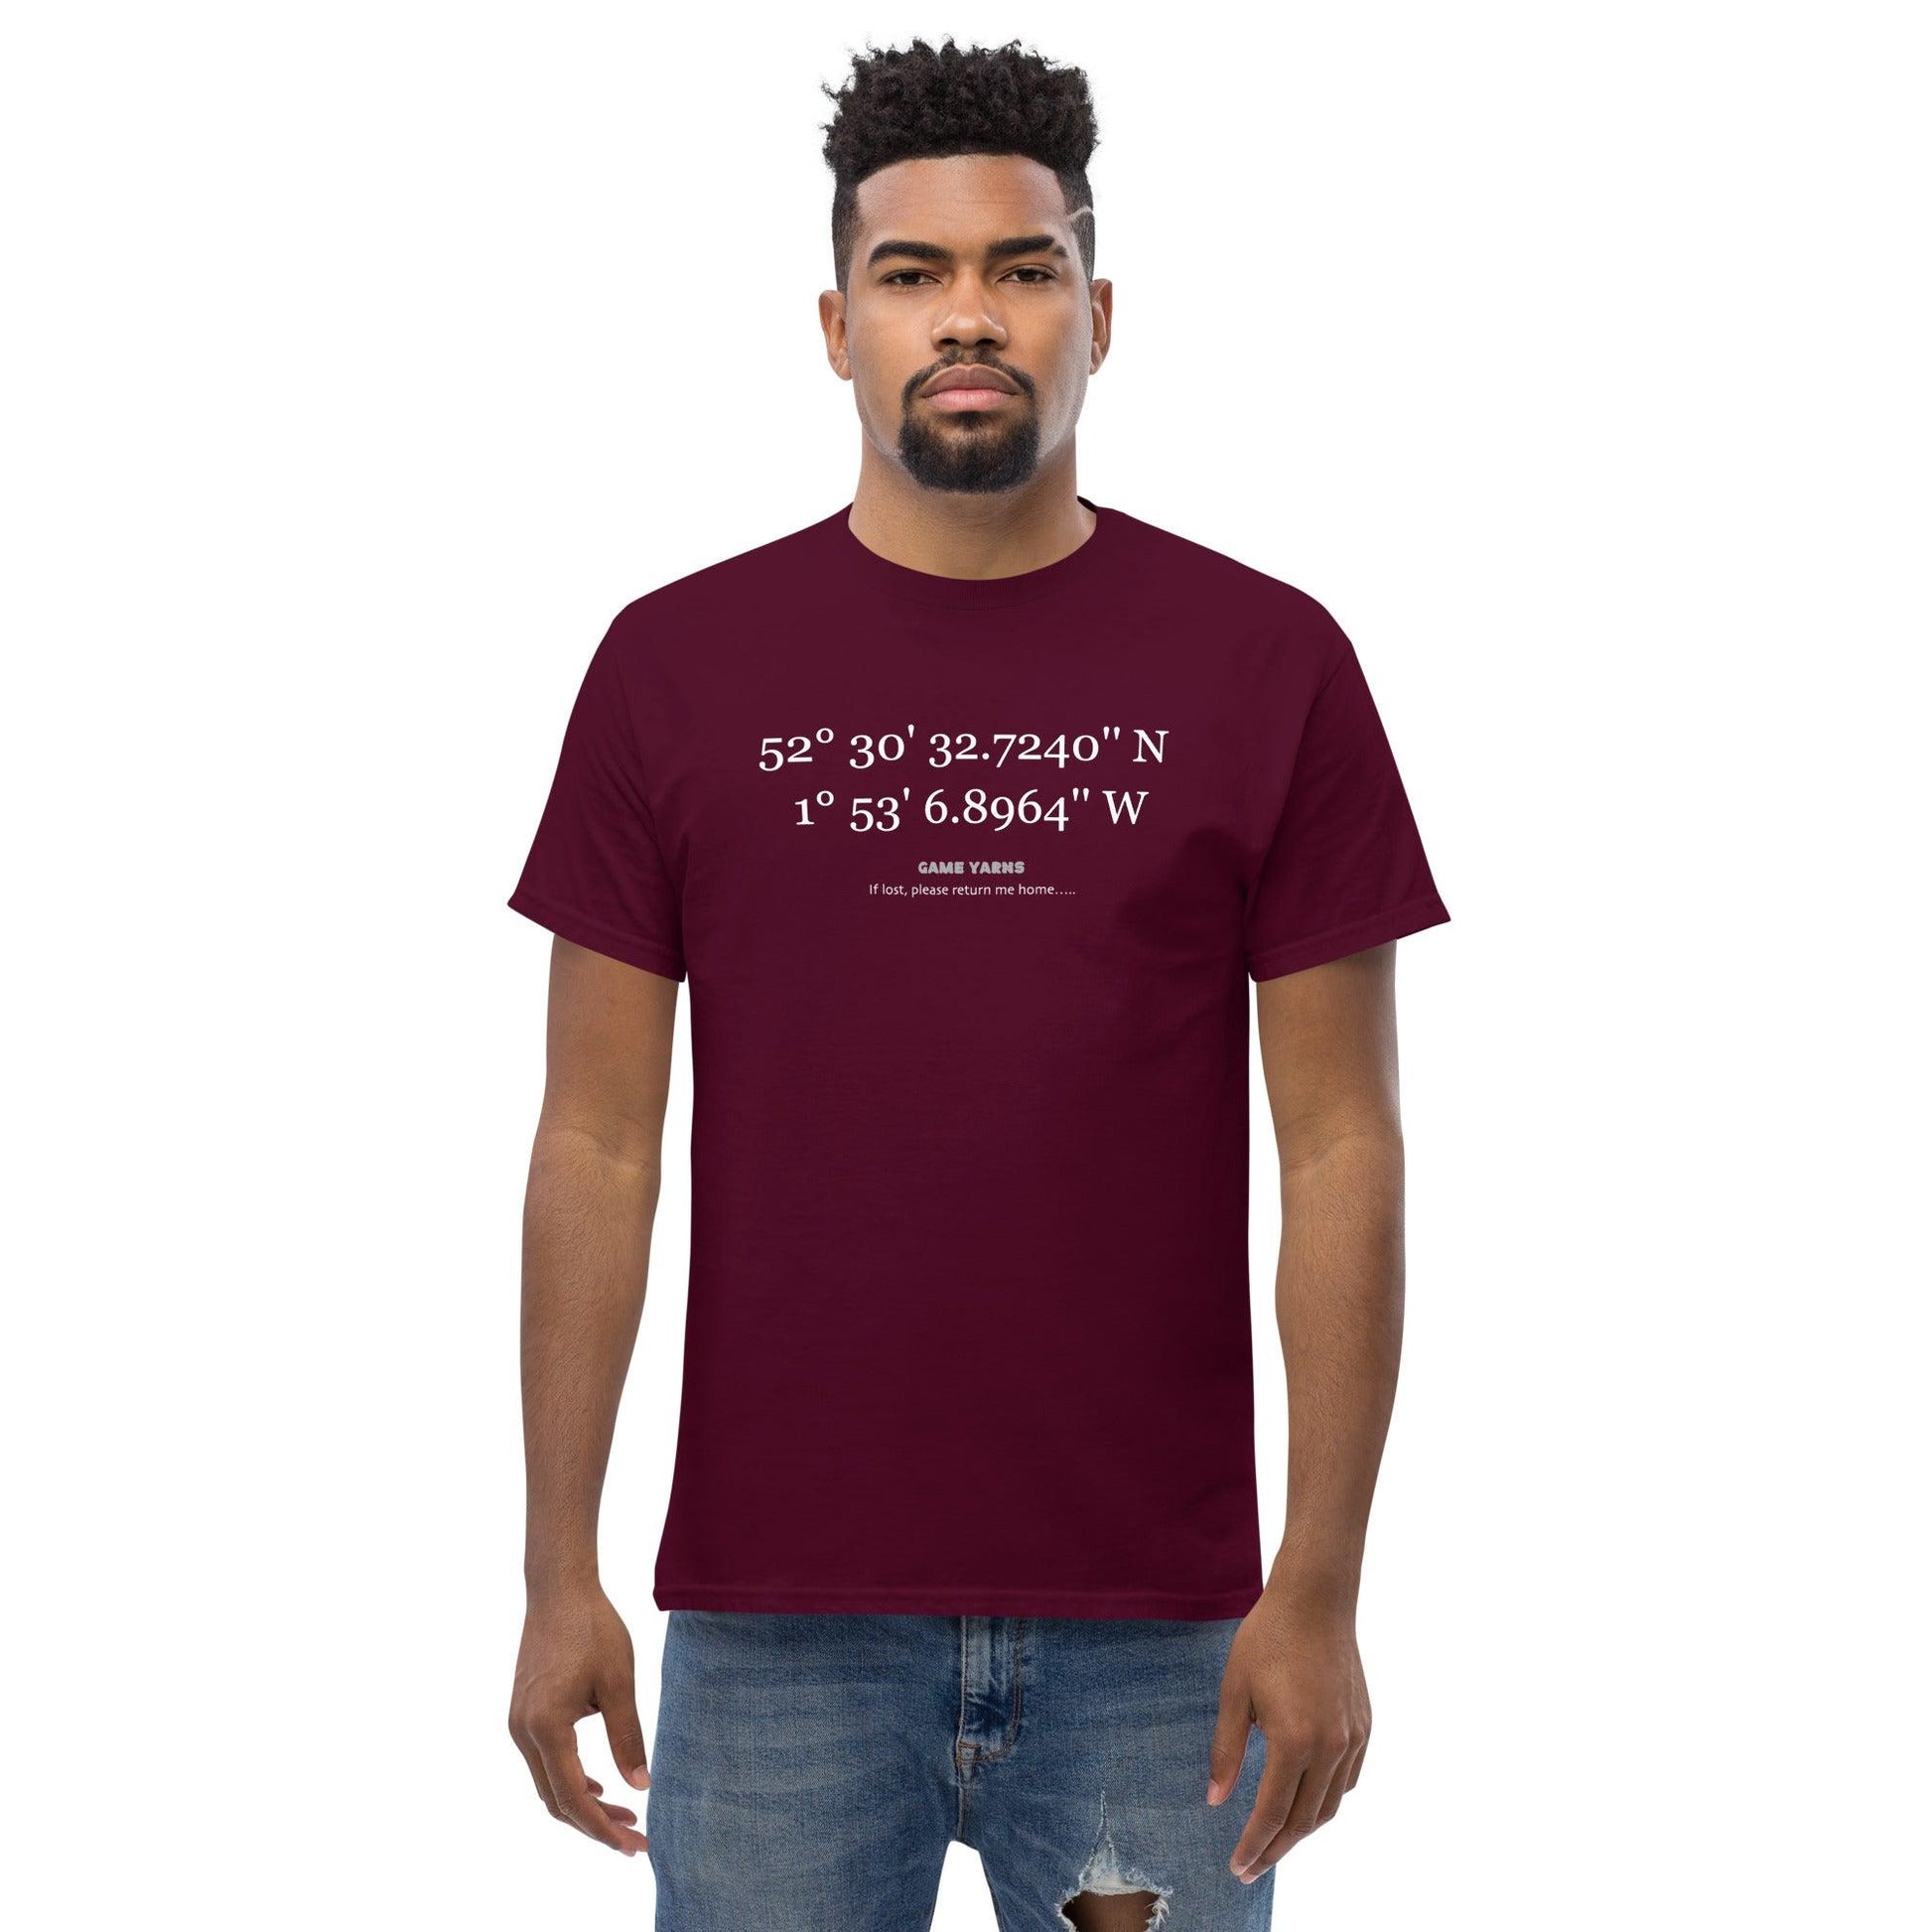 Aston Villa GPS T-shirt. - Game Yarns